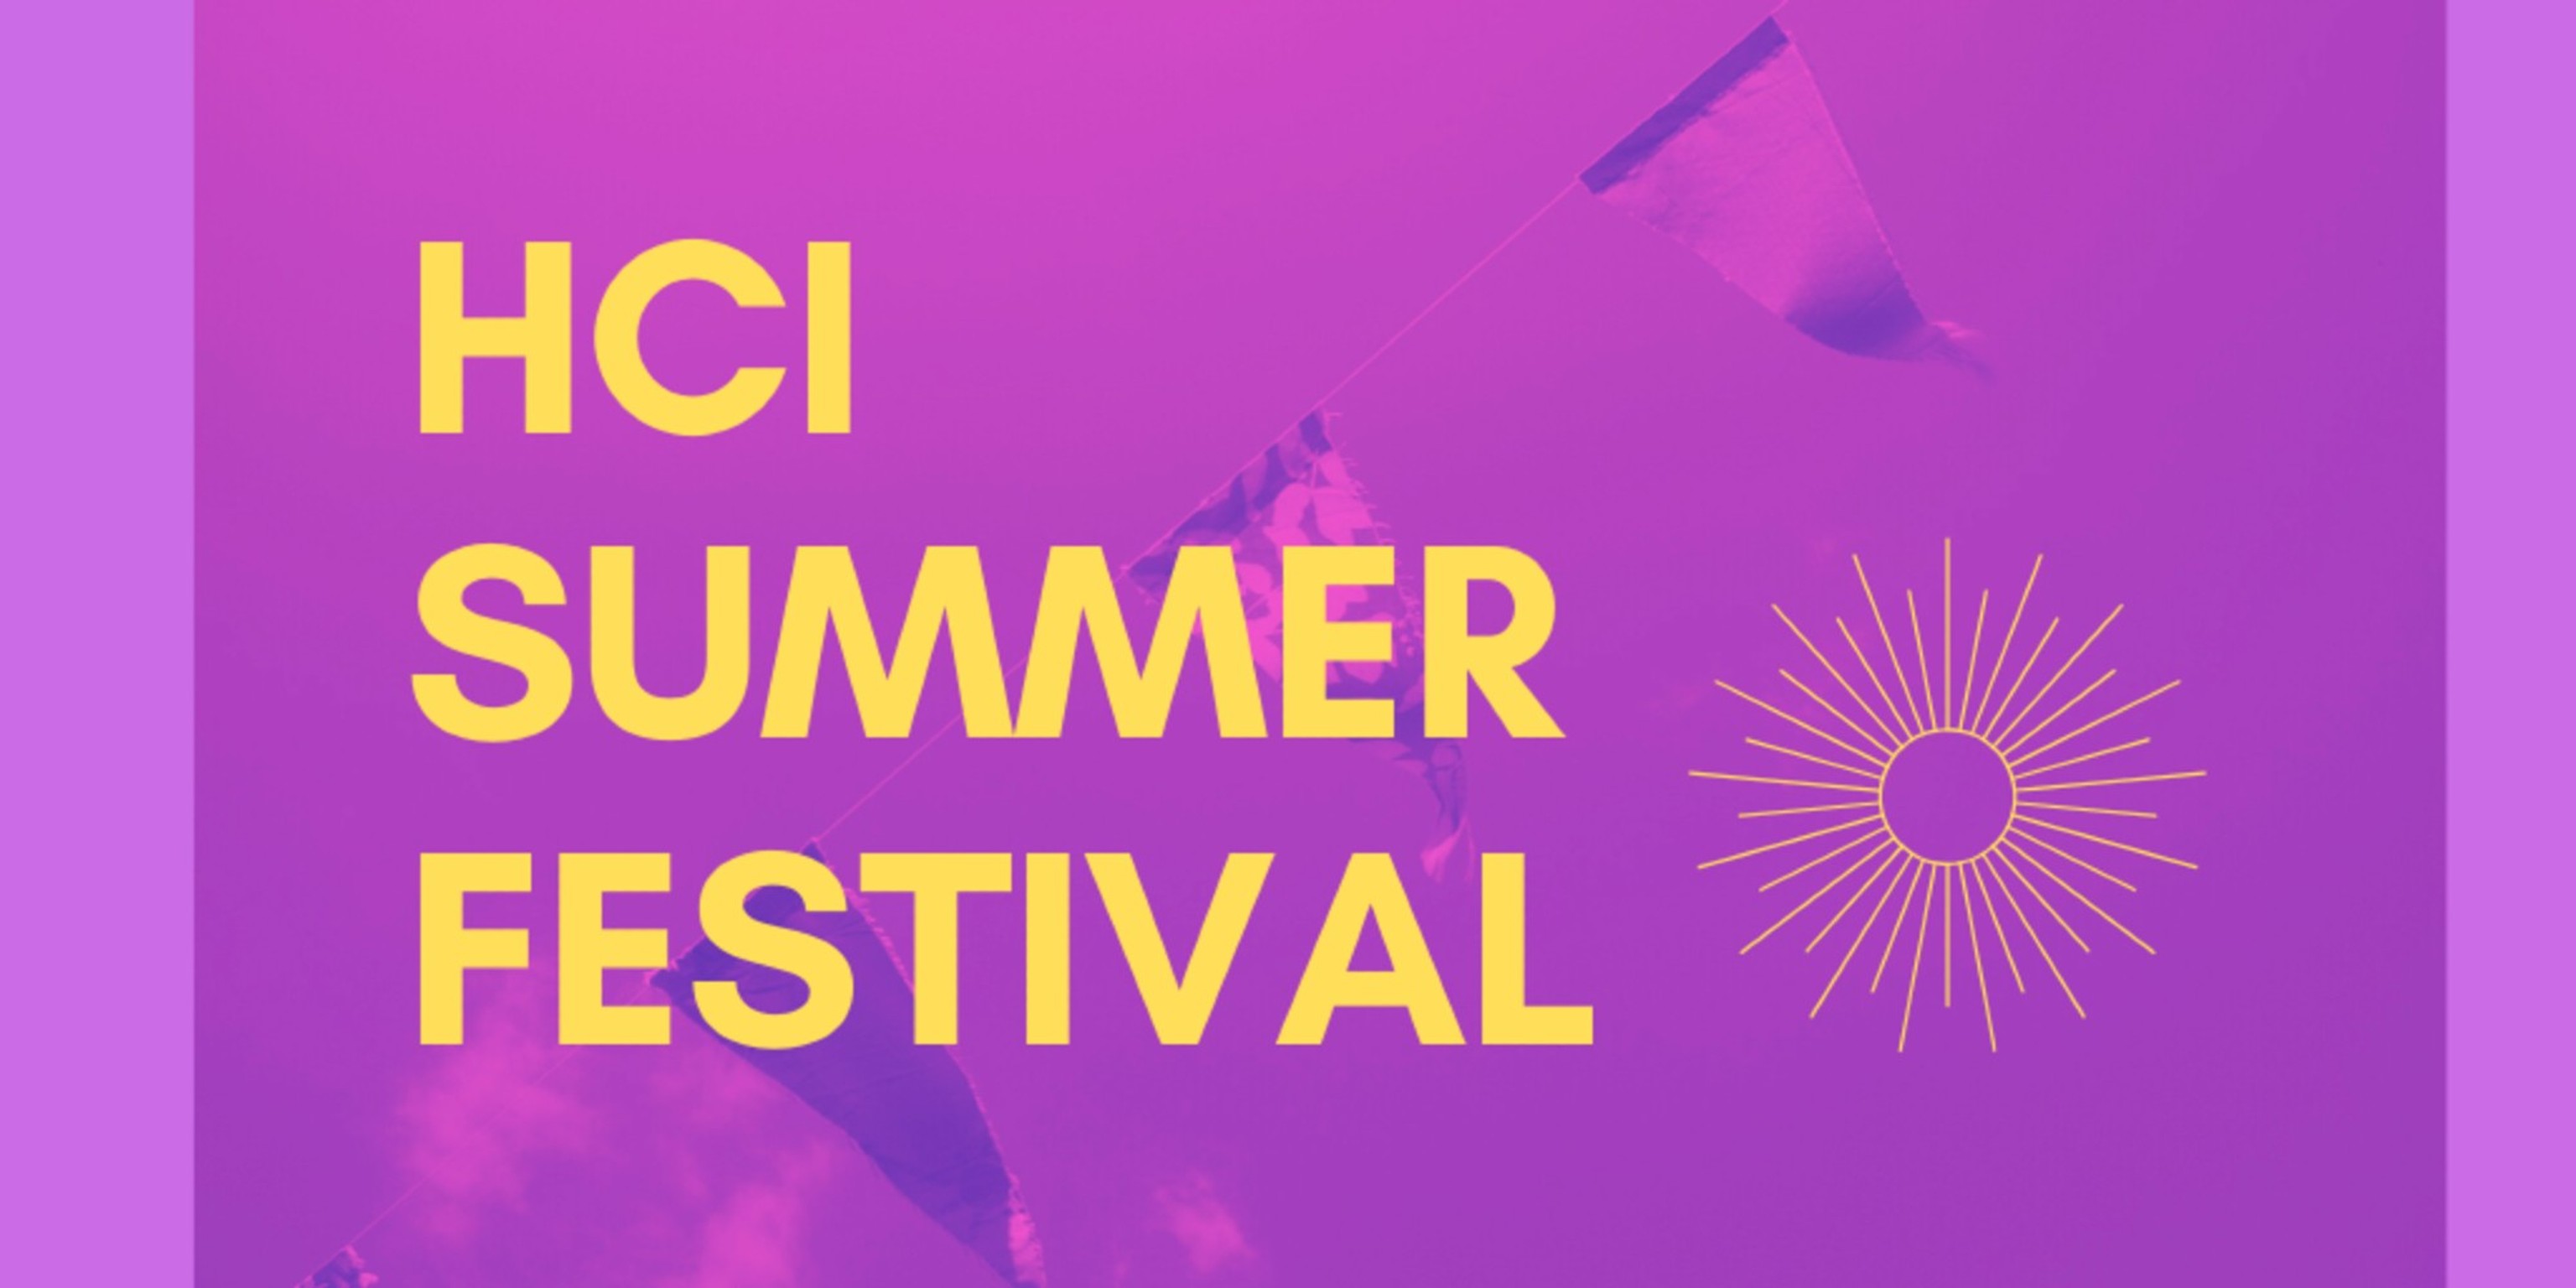 Running a week long virtual event - the HCI summer festival